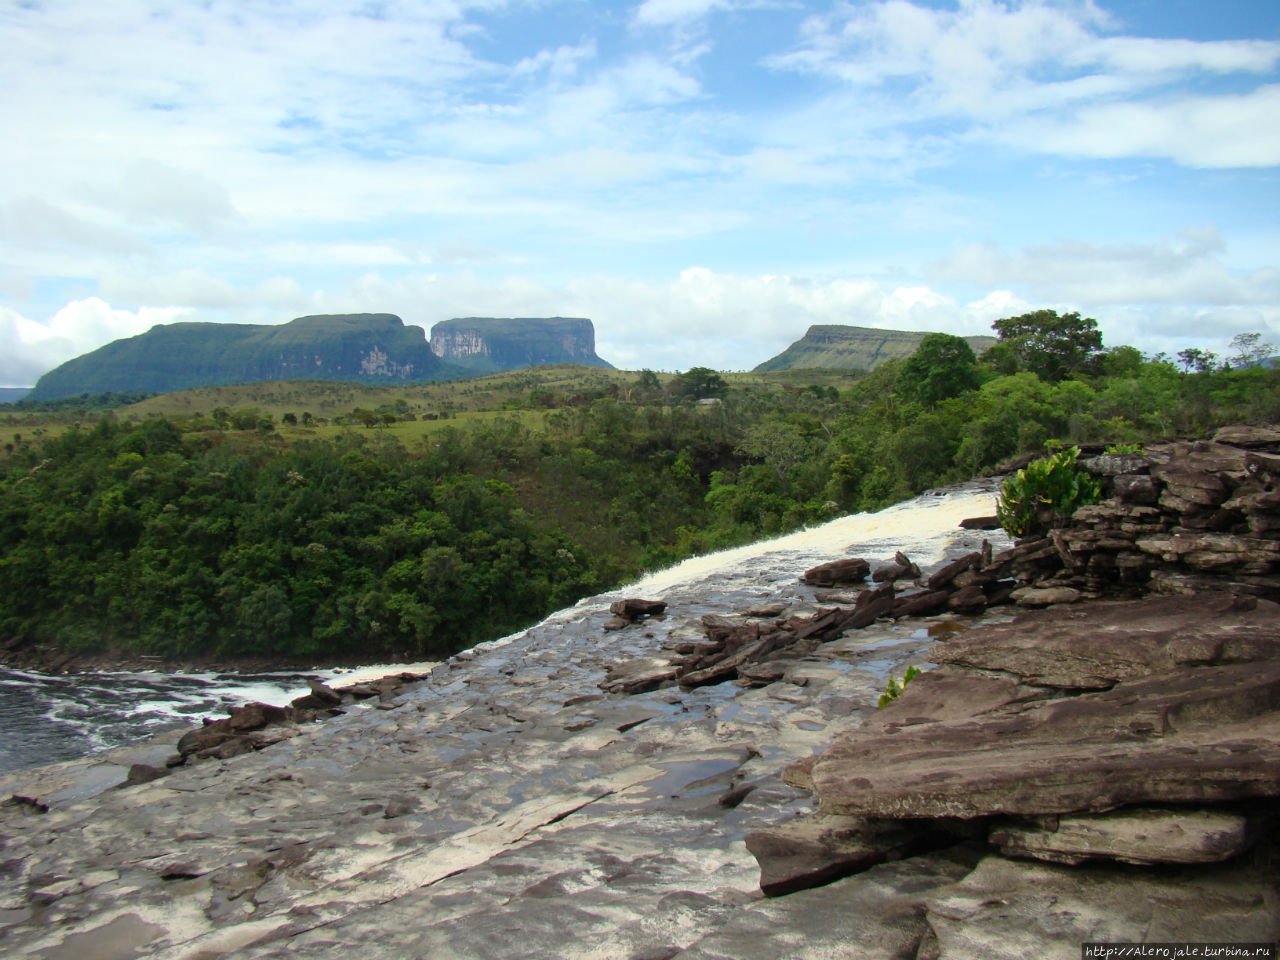 Место куда я обязательно вернусь! Национальный парк Канайма, Венесуэла